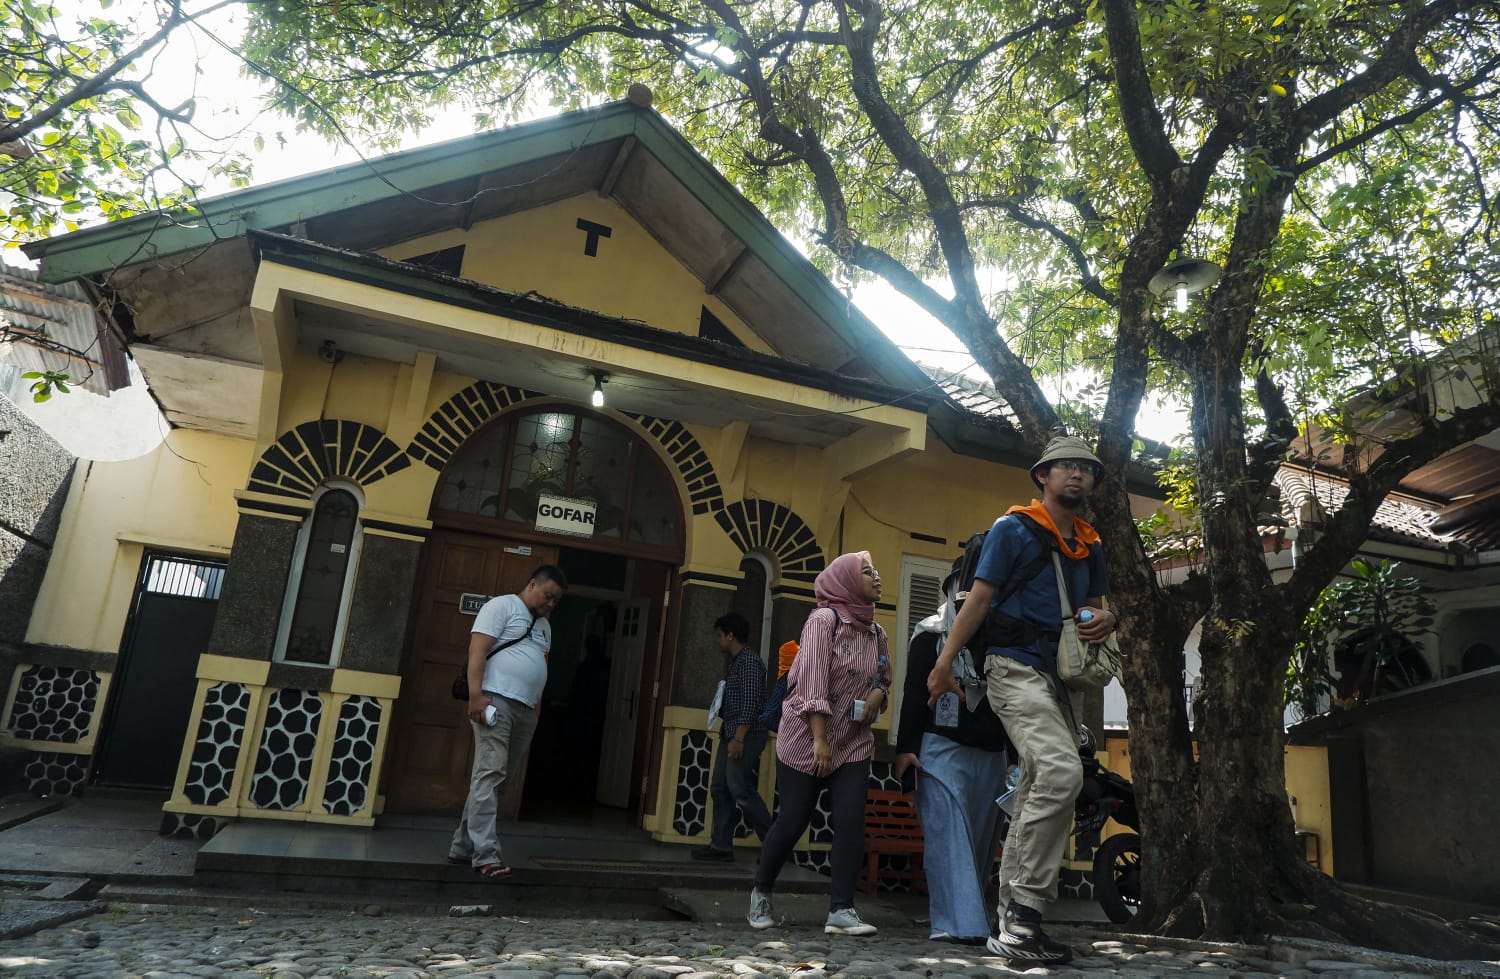 Kegiatan Tjitjalengka Historical Trip saat lakukan tur sejarah / Bas